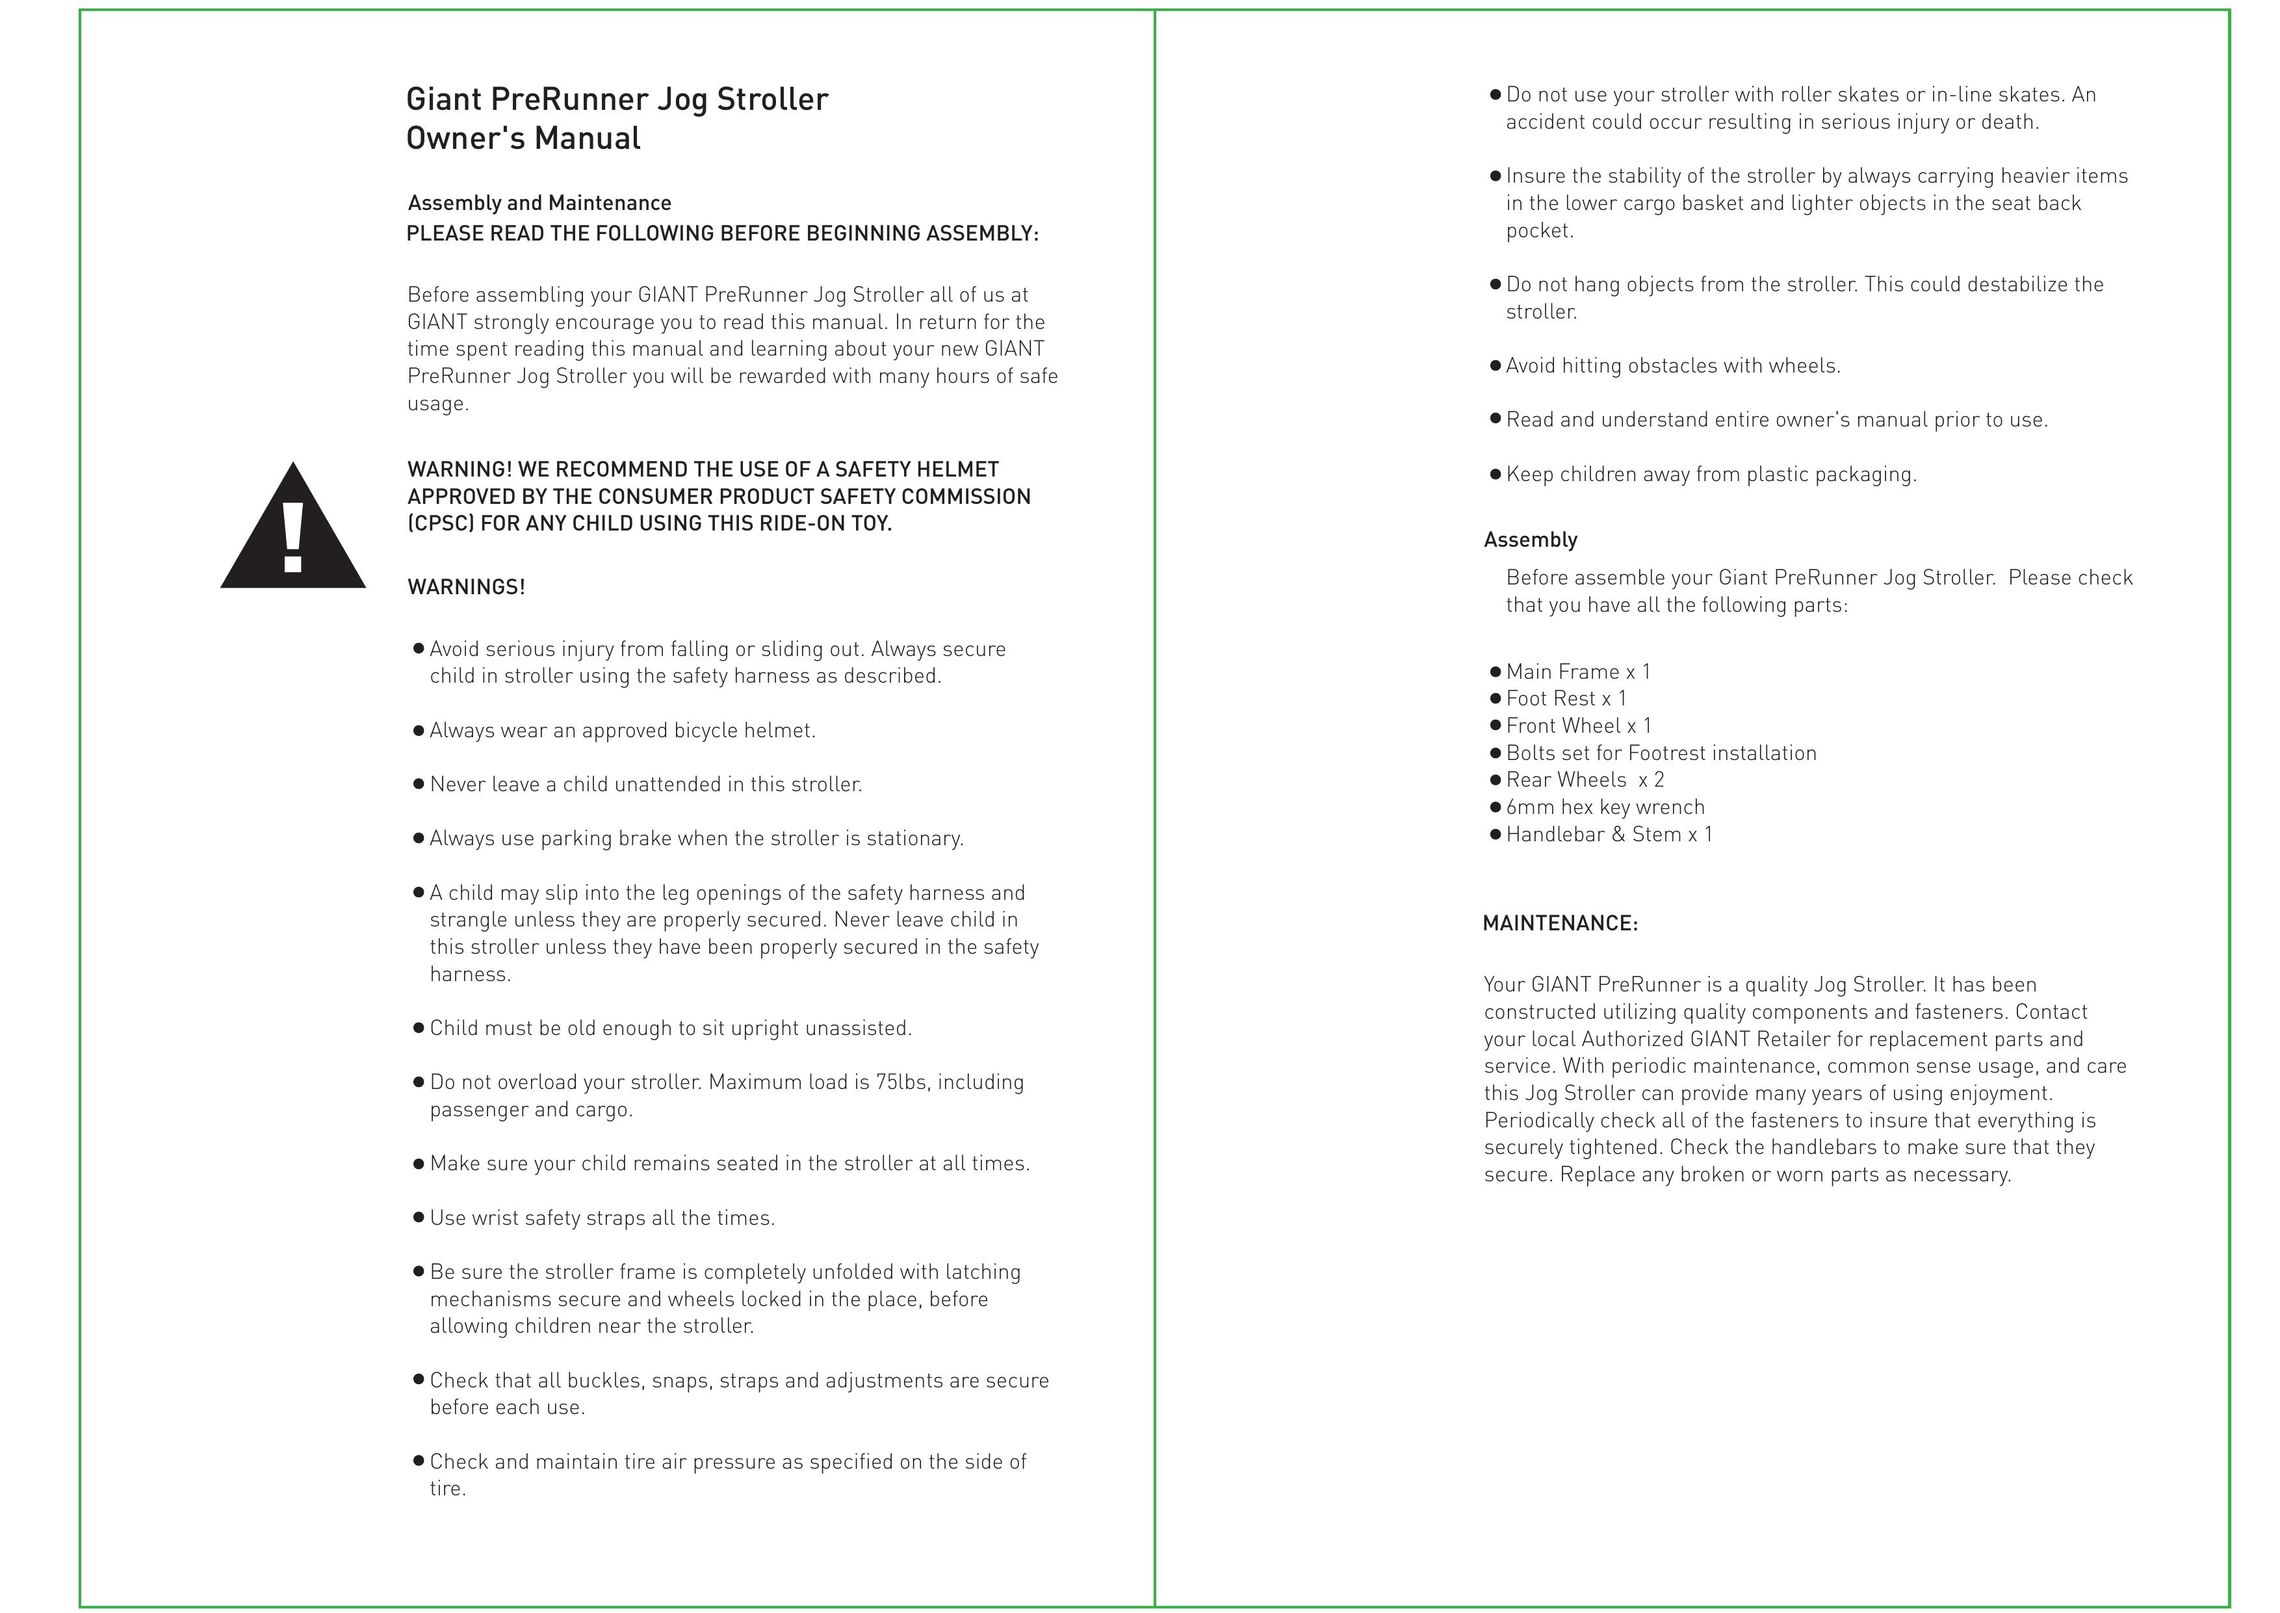 Giant PreRunner Jog Stroller Stroller User Manual